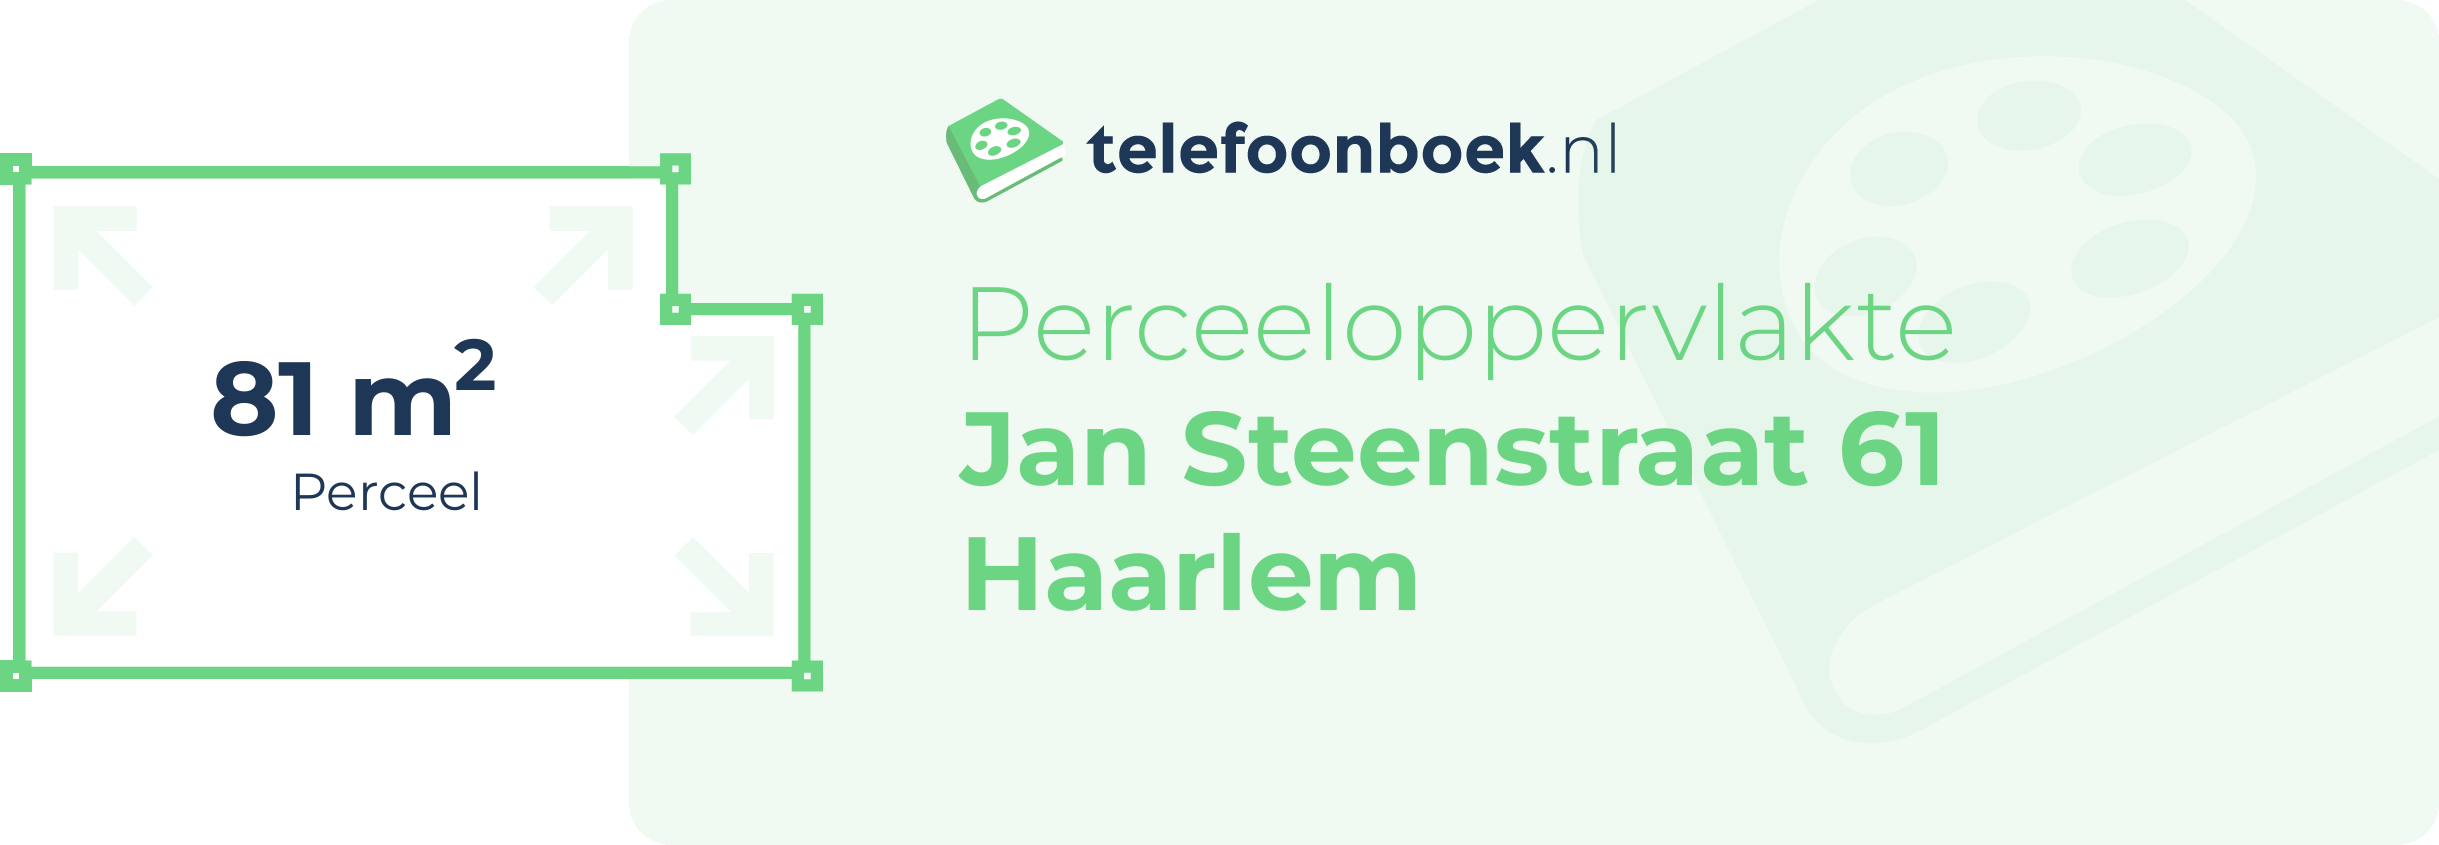 Perceeloppervlakte Jan Steenstraat 61 Haarlem